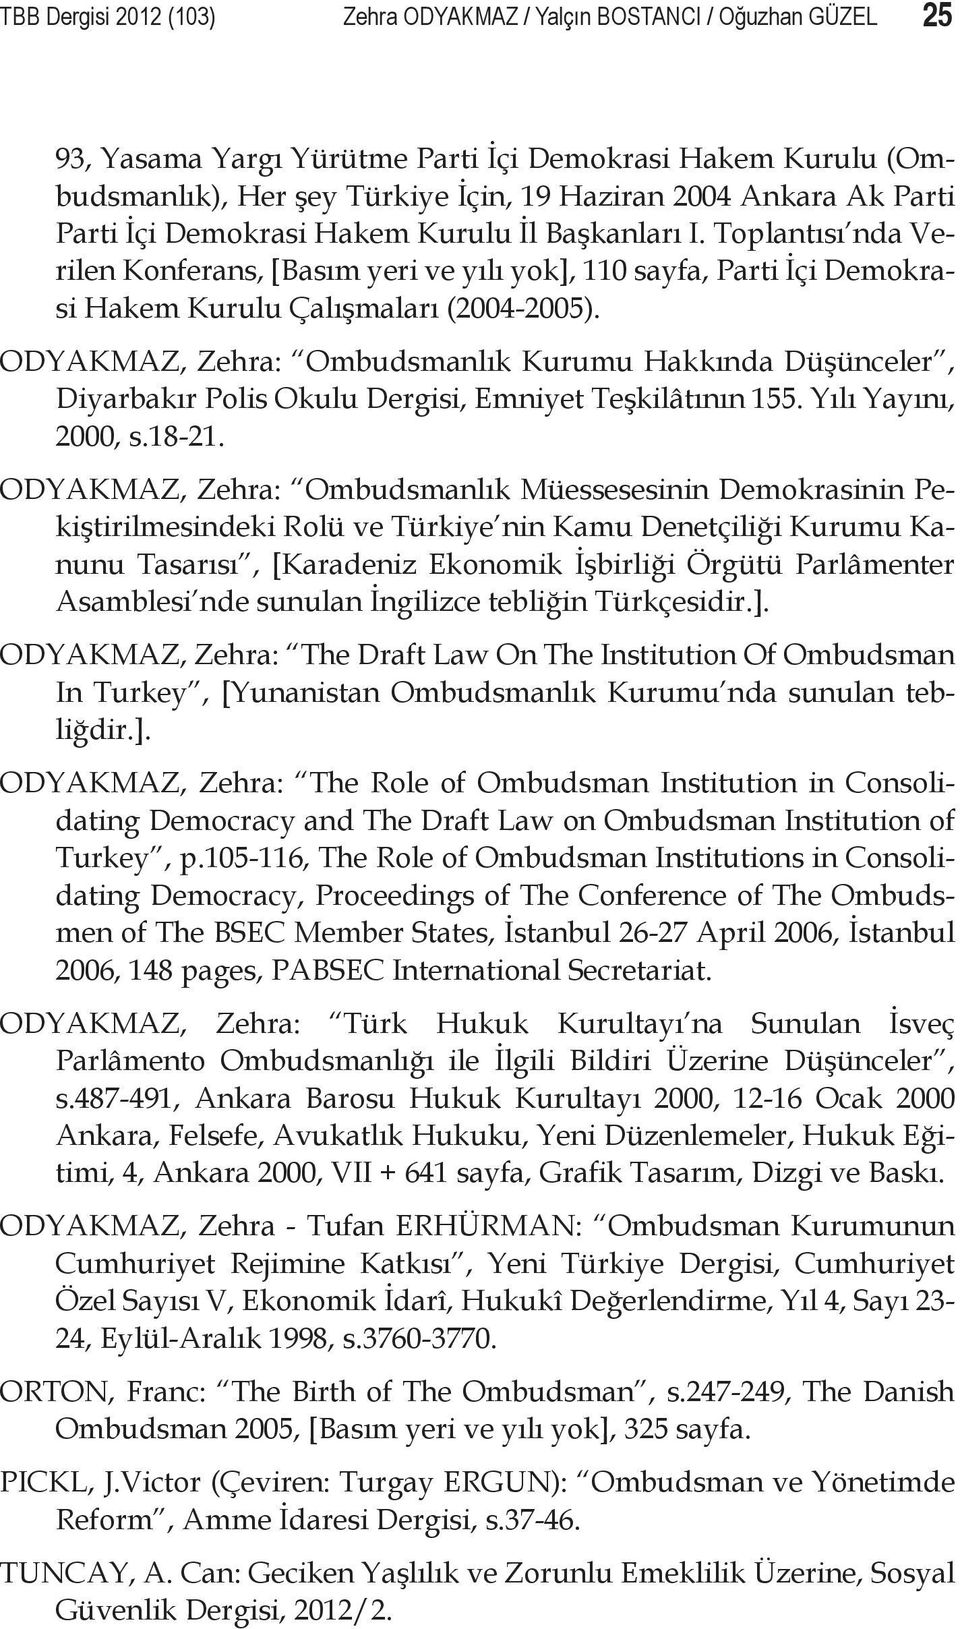 ODYAKMAZ, Zehra: Ombudsmanlık Kurumu Hakkında Düşünceler, Diyarbakır Polis Okulu Dergisi, Emniyet Teşkilâtının 155. Yılı Yayını, 2000, s.18-21.